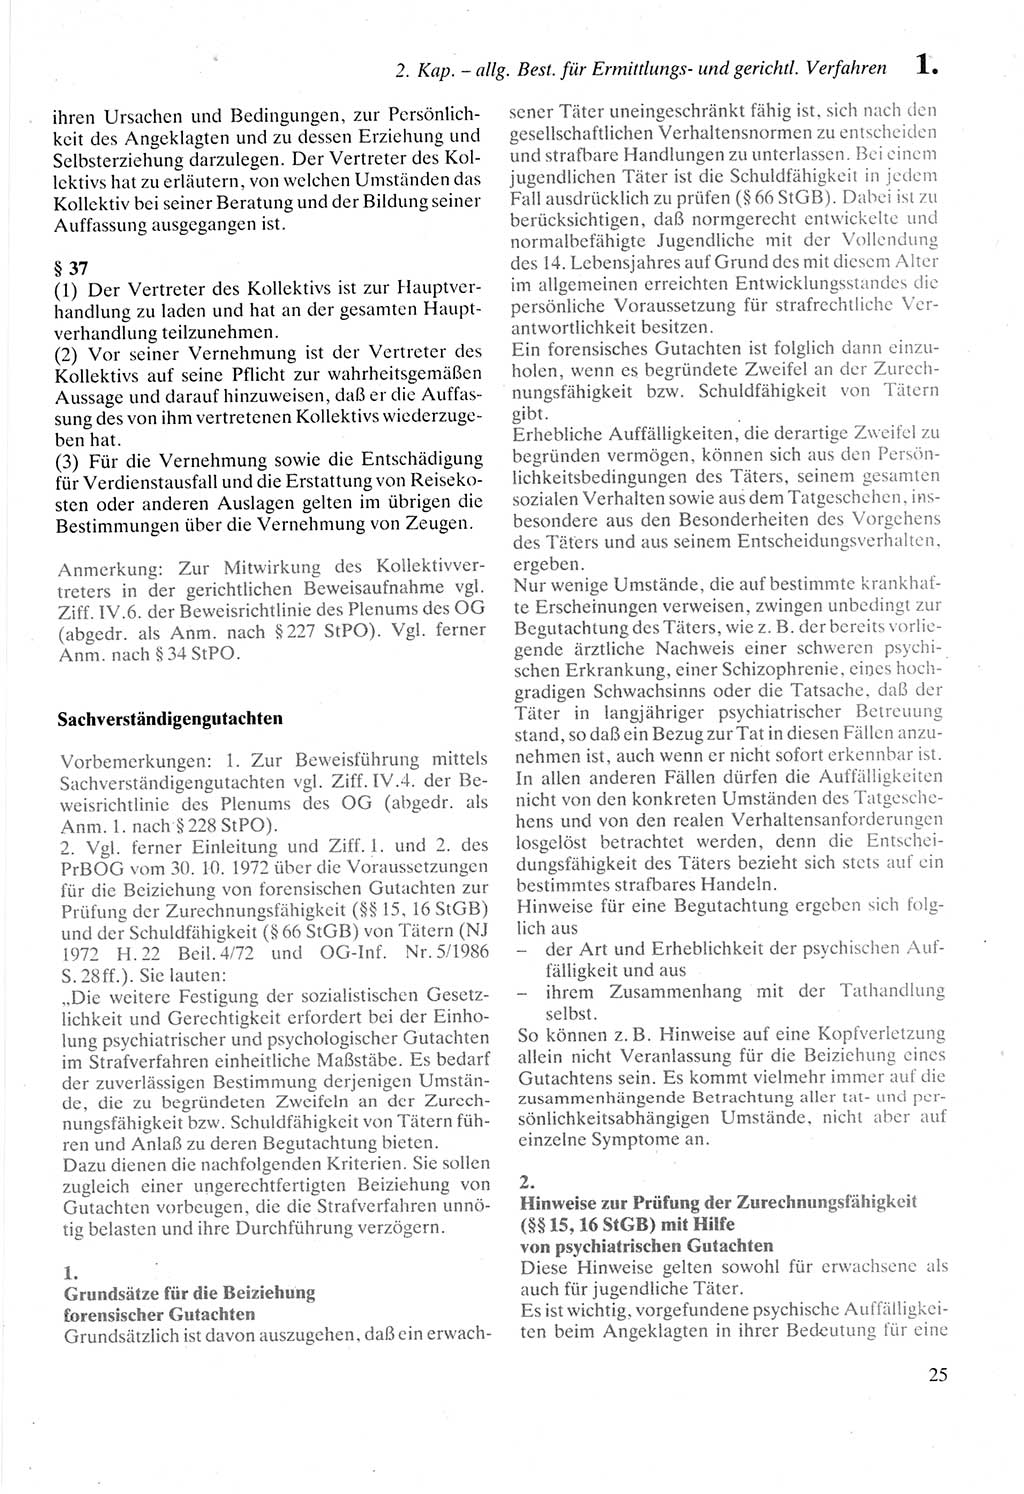 Strafprozeßordnung (StPO) der Deutschen Demokratischen Republik (DDR) sowie angrenzende Gesetze und Bestimmungen 1987, Seite 25 (StPO DDR Ges. Best. 1987, S. 25)